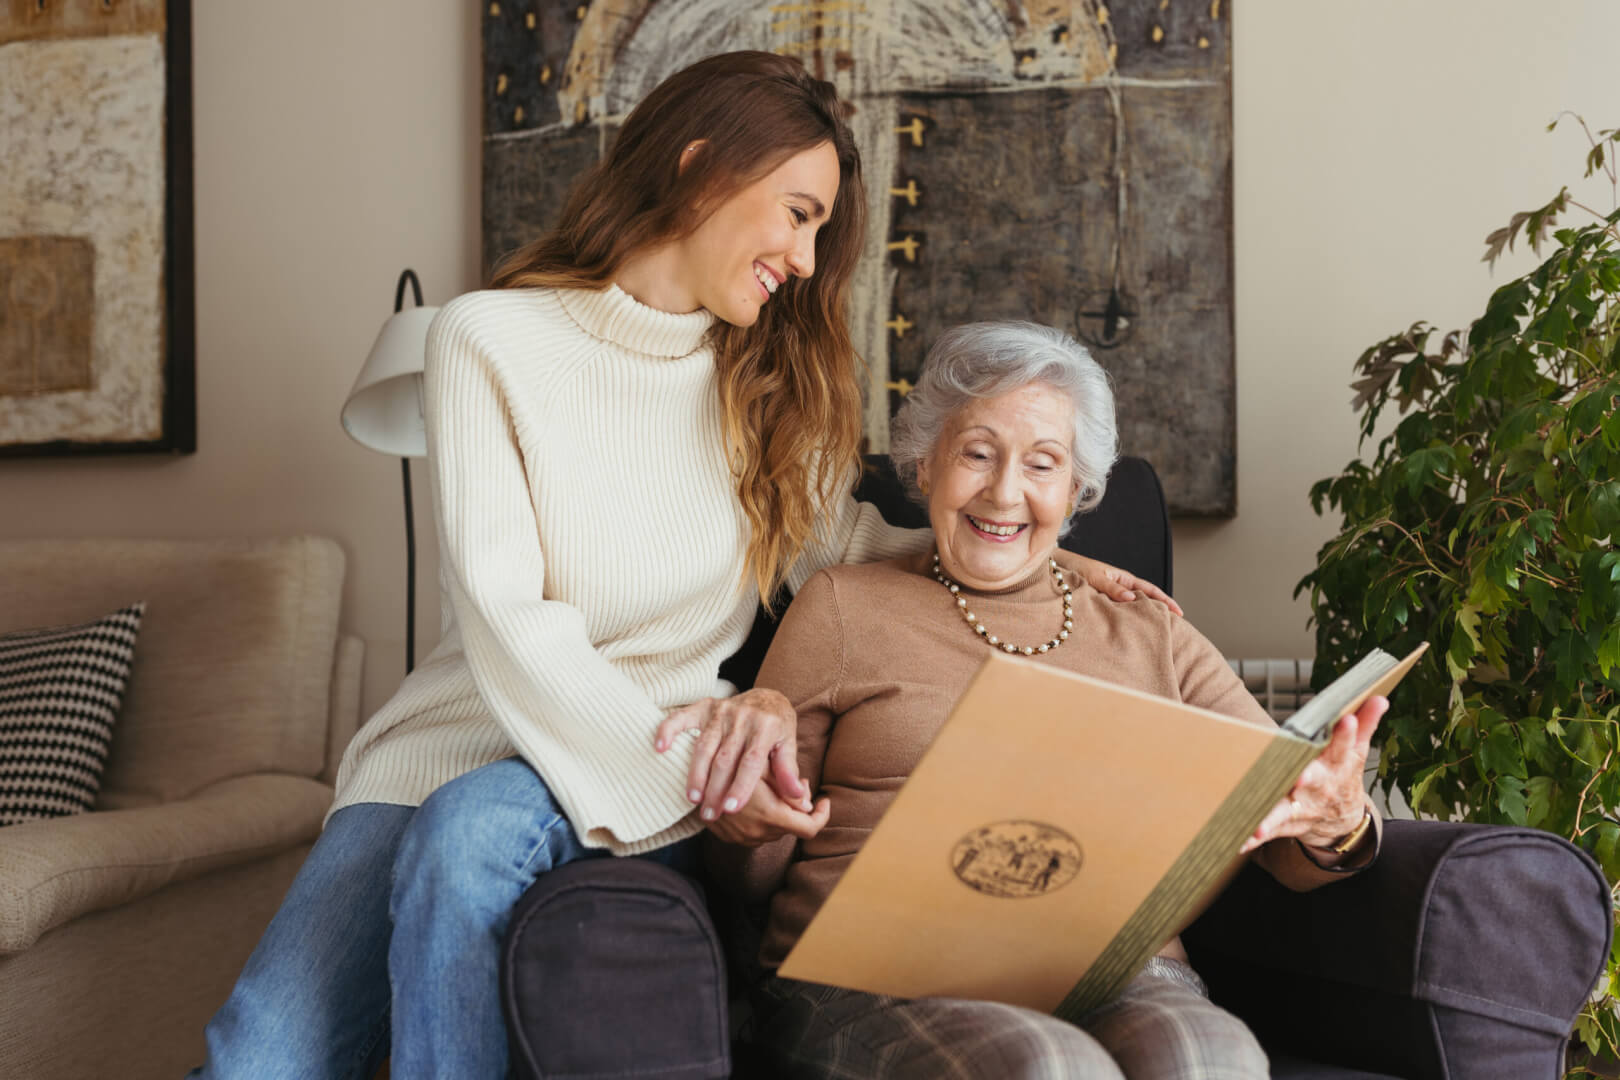 Una trabajadora del hogar sonríe y comparte un bonito momento con una anciana mientras ven un álbum de fotos en una casa. 